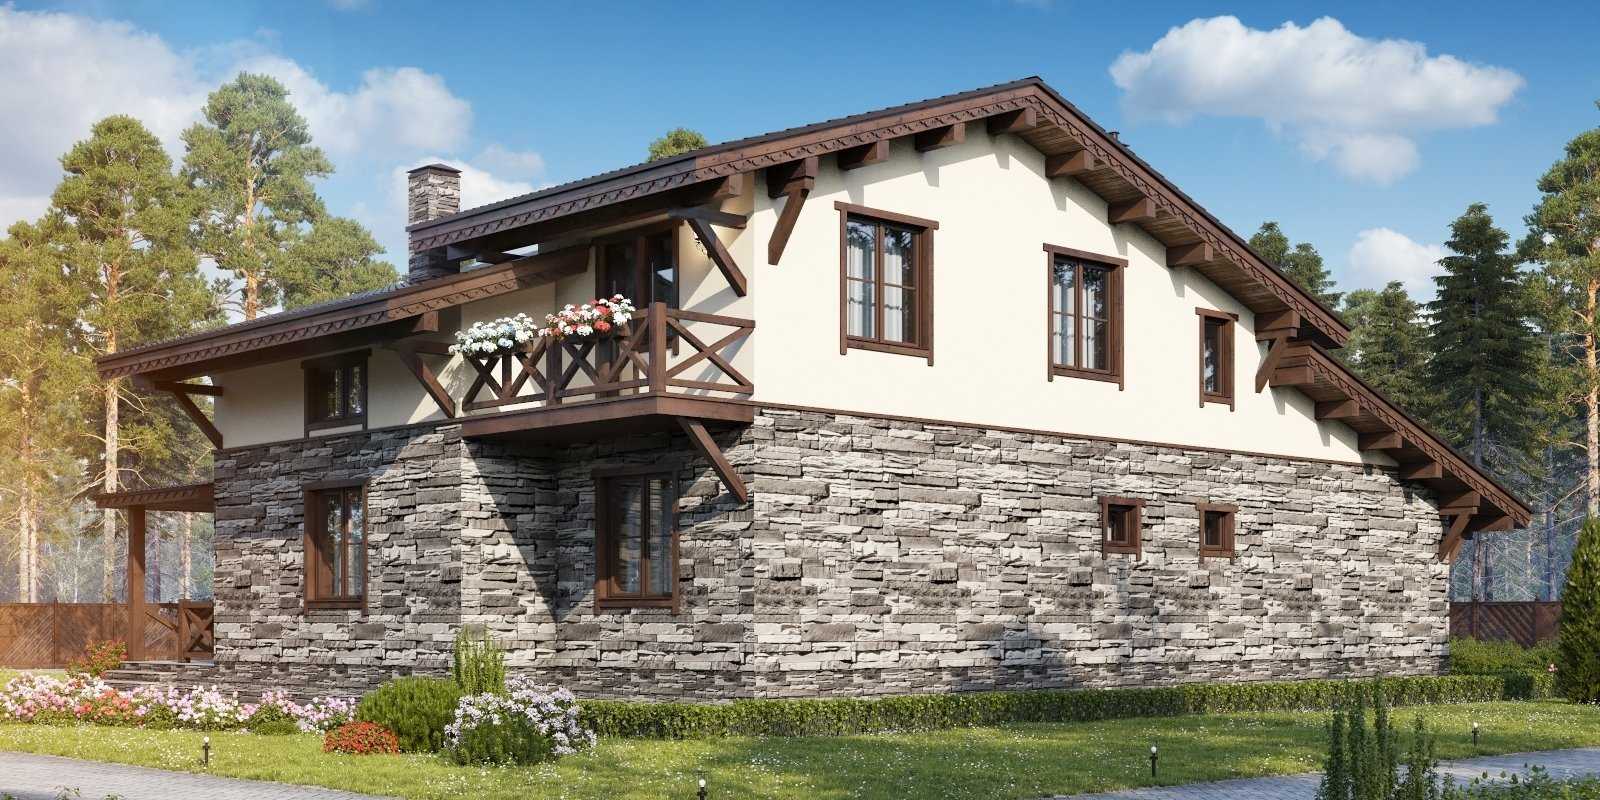 Комбинированные дома из камня и дерева в стиле шале, проекты и строительство под ключ во владимире домов из кирпича и бруса